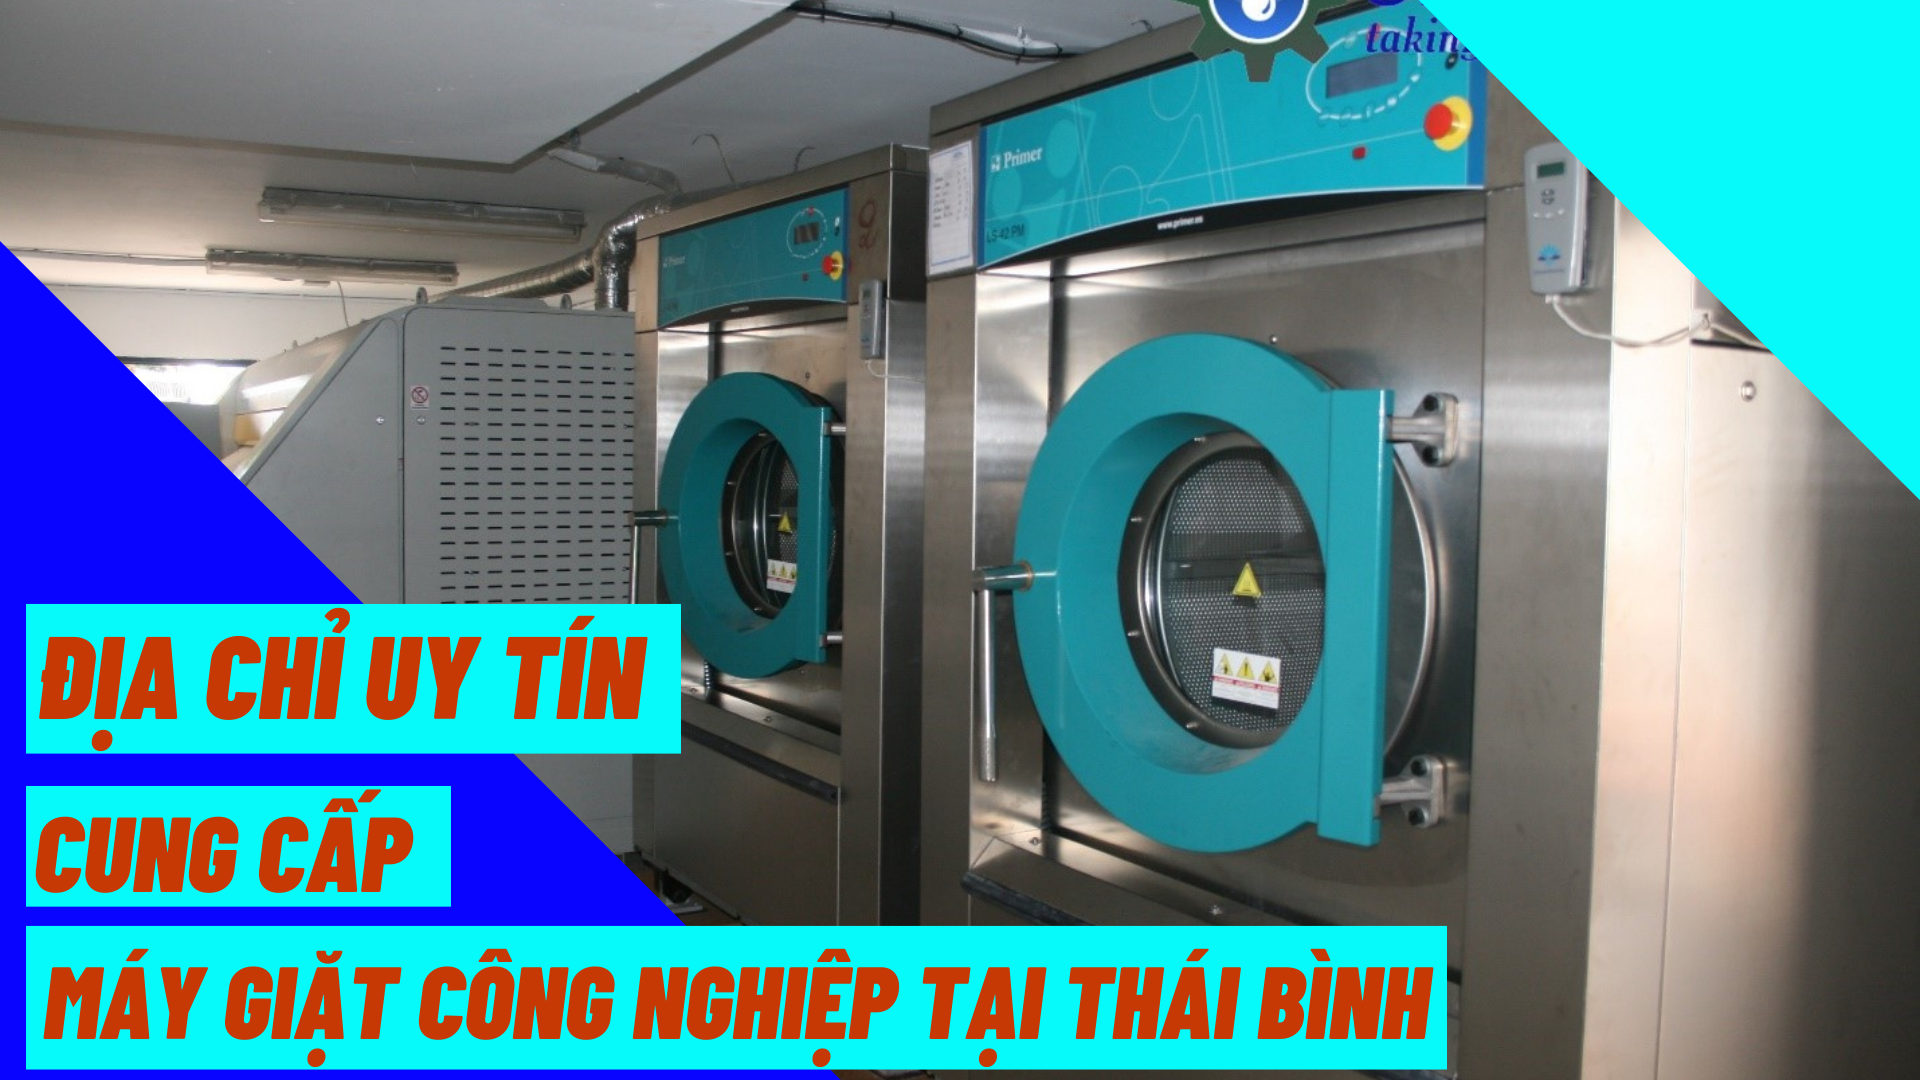 Địa chỉ uy tín cung cấp máy giặt công nghiệp tại Thái Bình